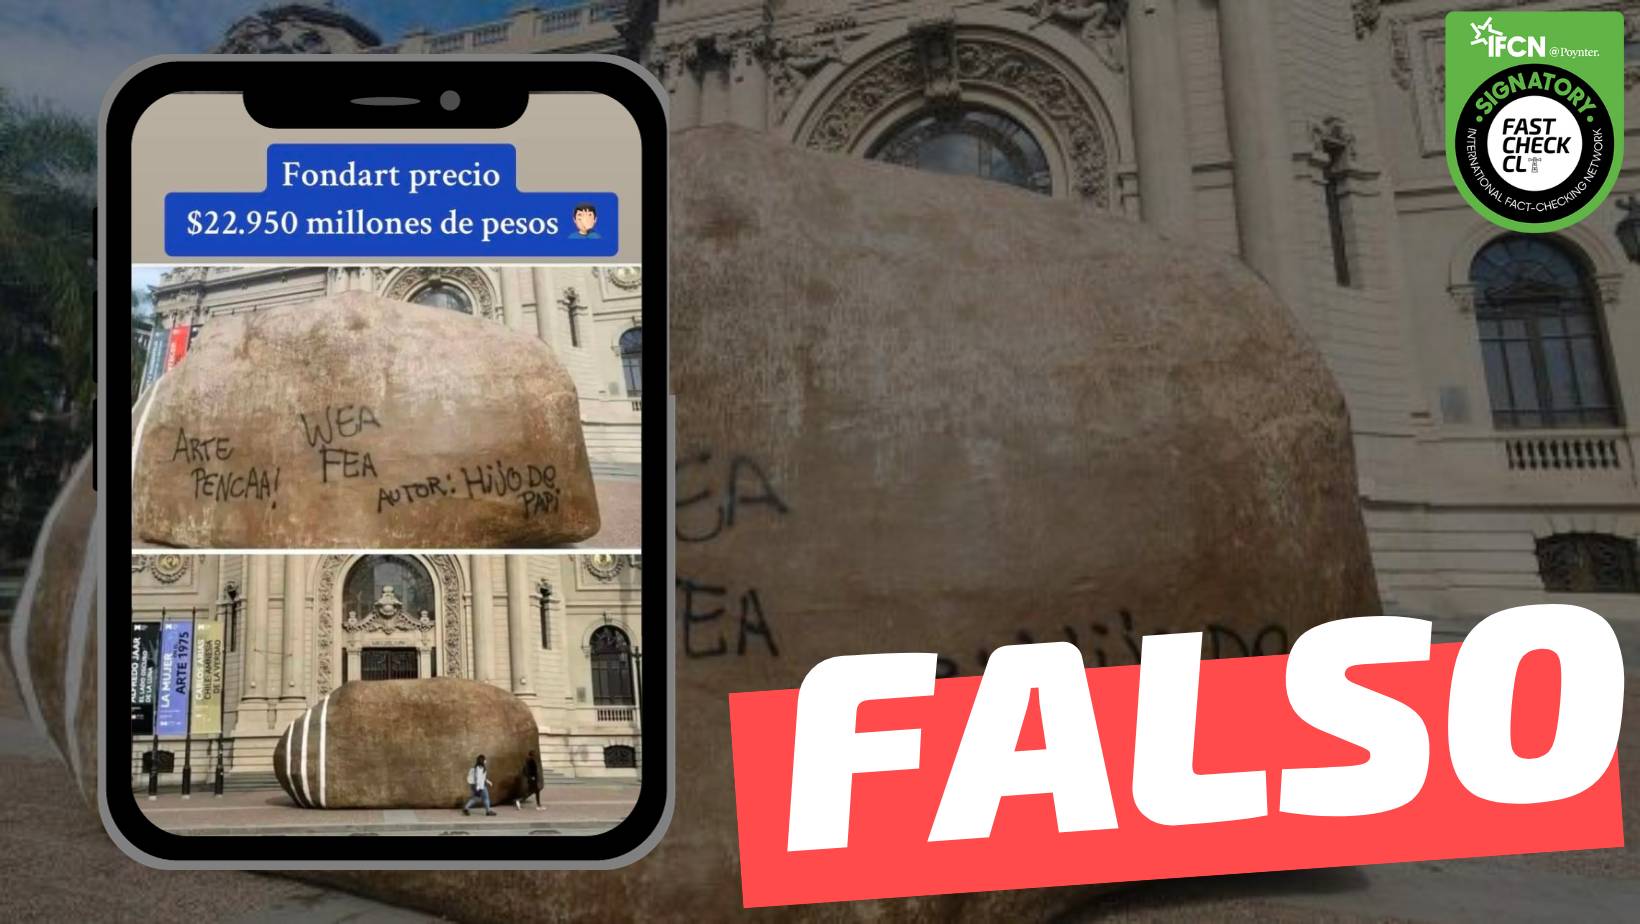 You are currently viewing La piedra que irrumpe el frontis del MNBA recibi贸 un “Fondart precio $22.950 millones”: #Falso